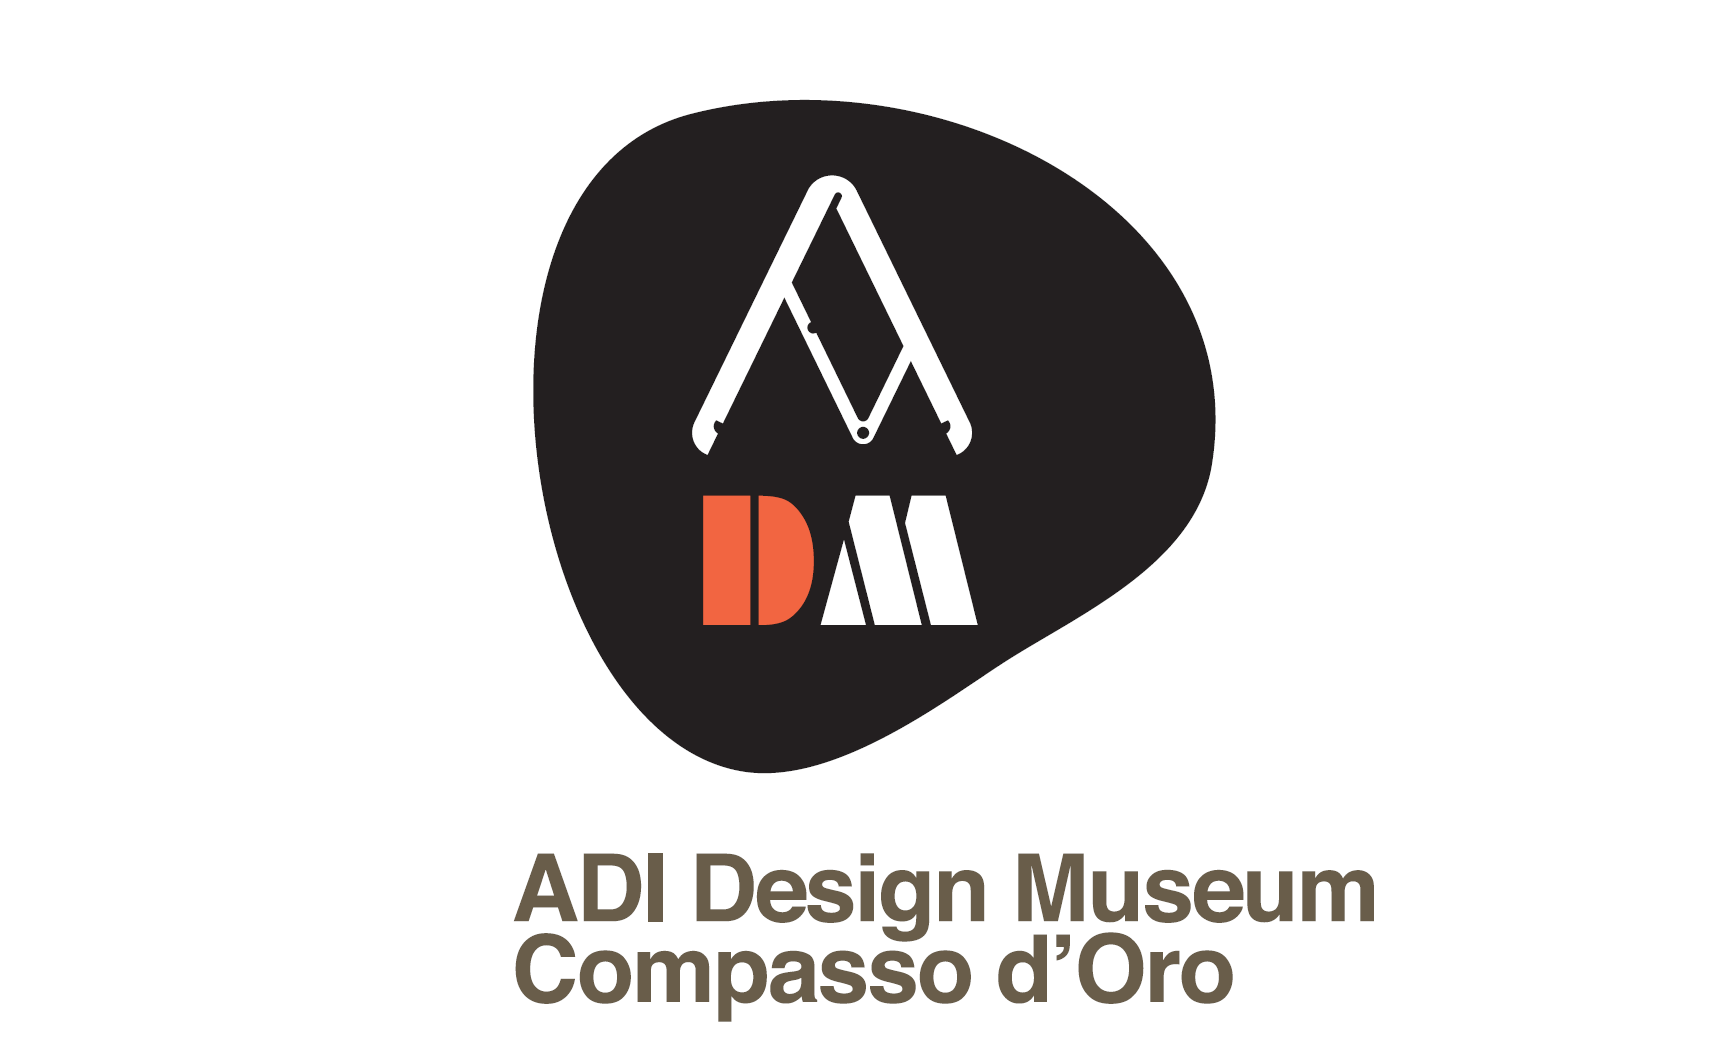 Il logo del Museo del design dell'ADI disegnato da Italo Lupi